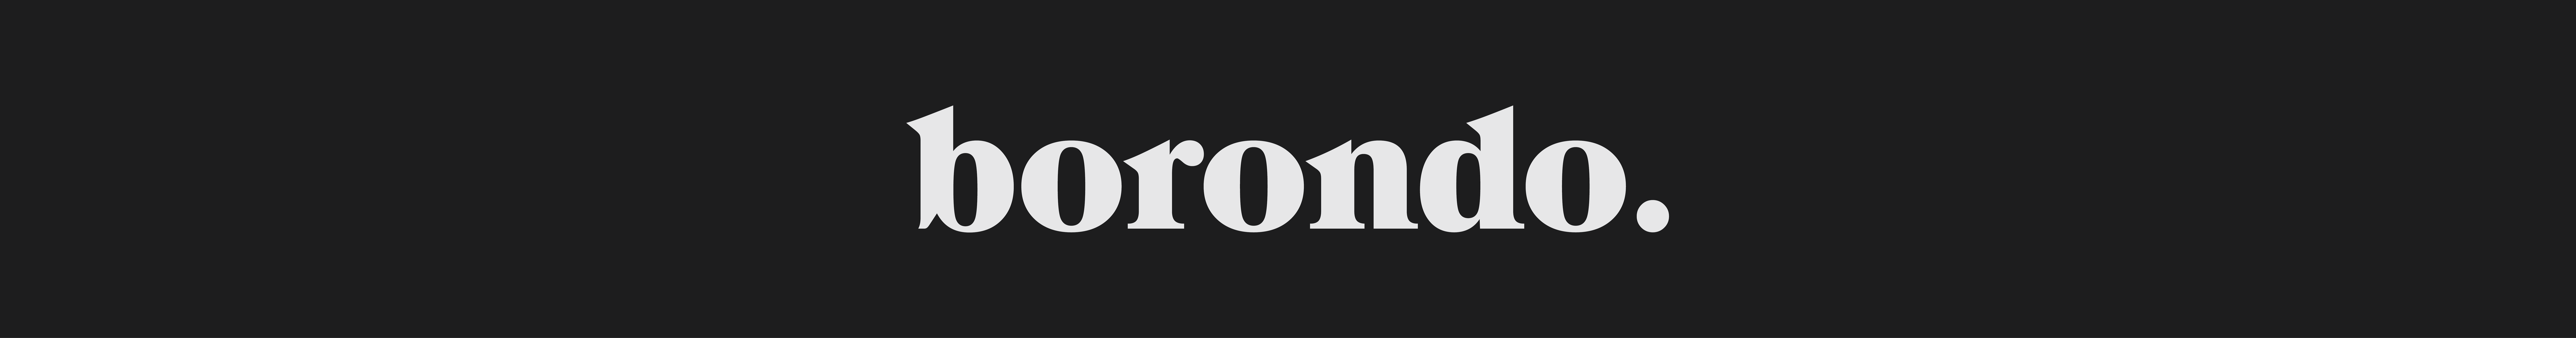 Borondo ®'s profile banner